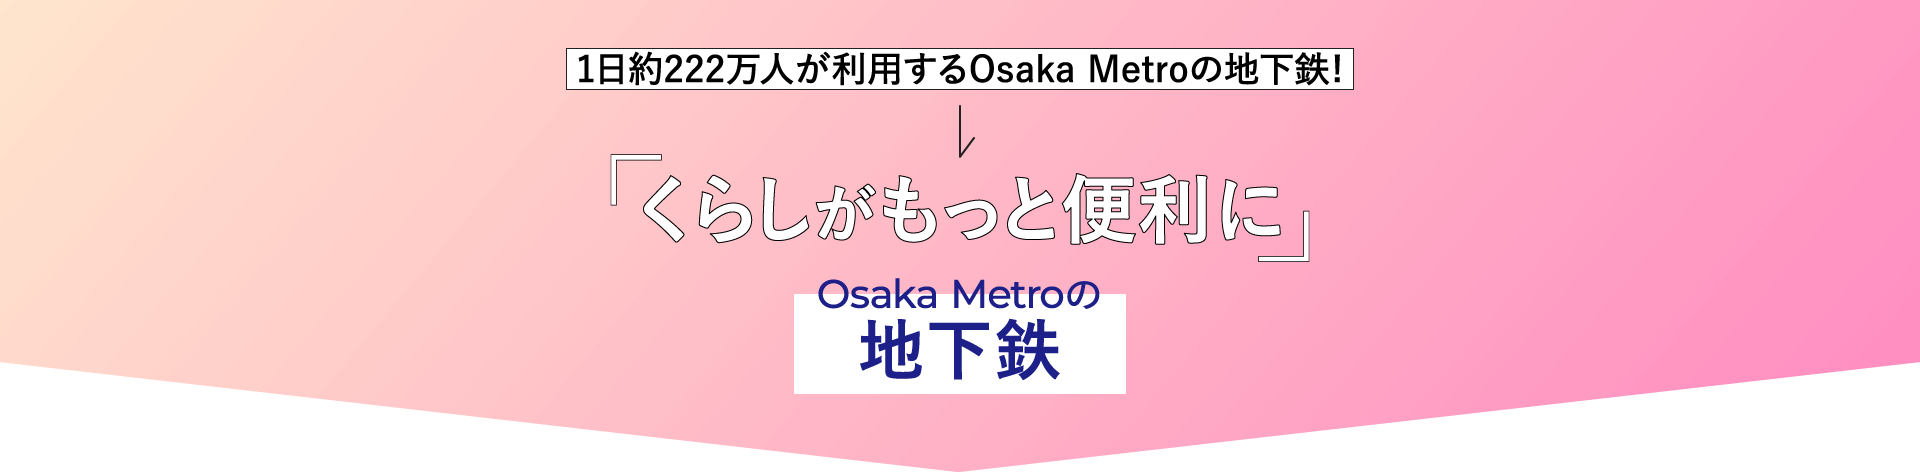 「くらしがもっと便利に」Osaka Metroの地下鉄